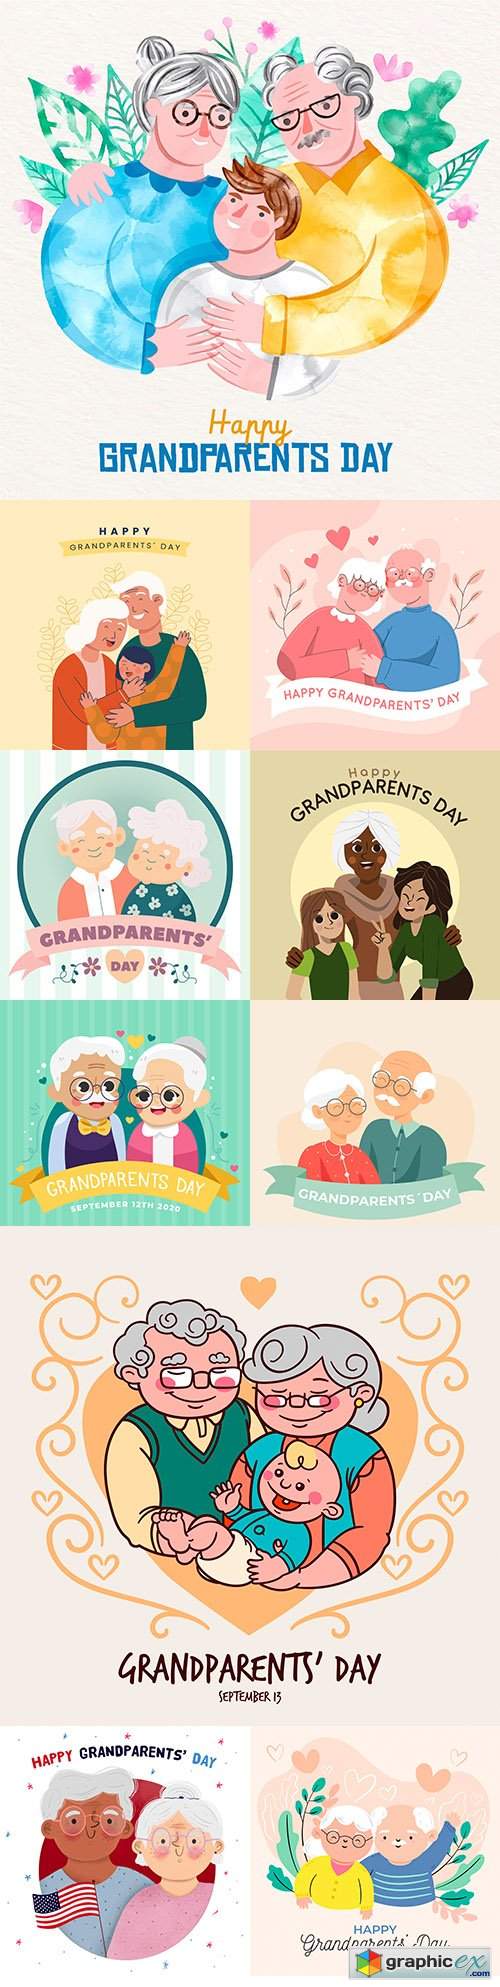  National grandparents day flat design illustration 